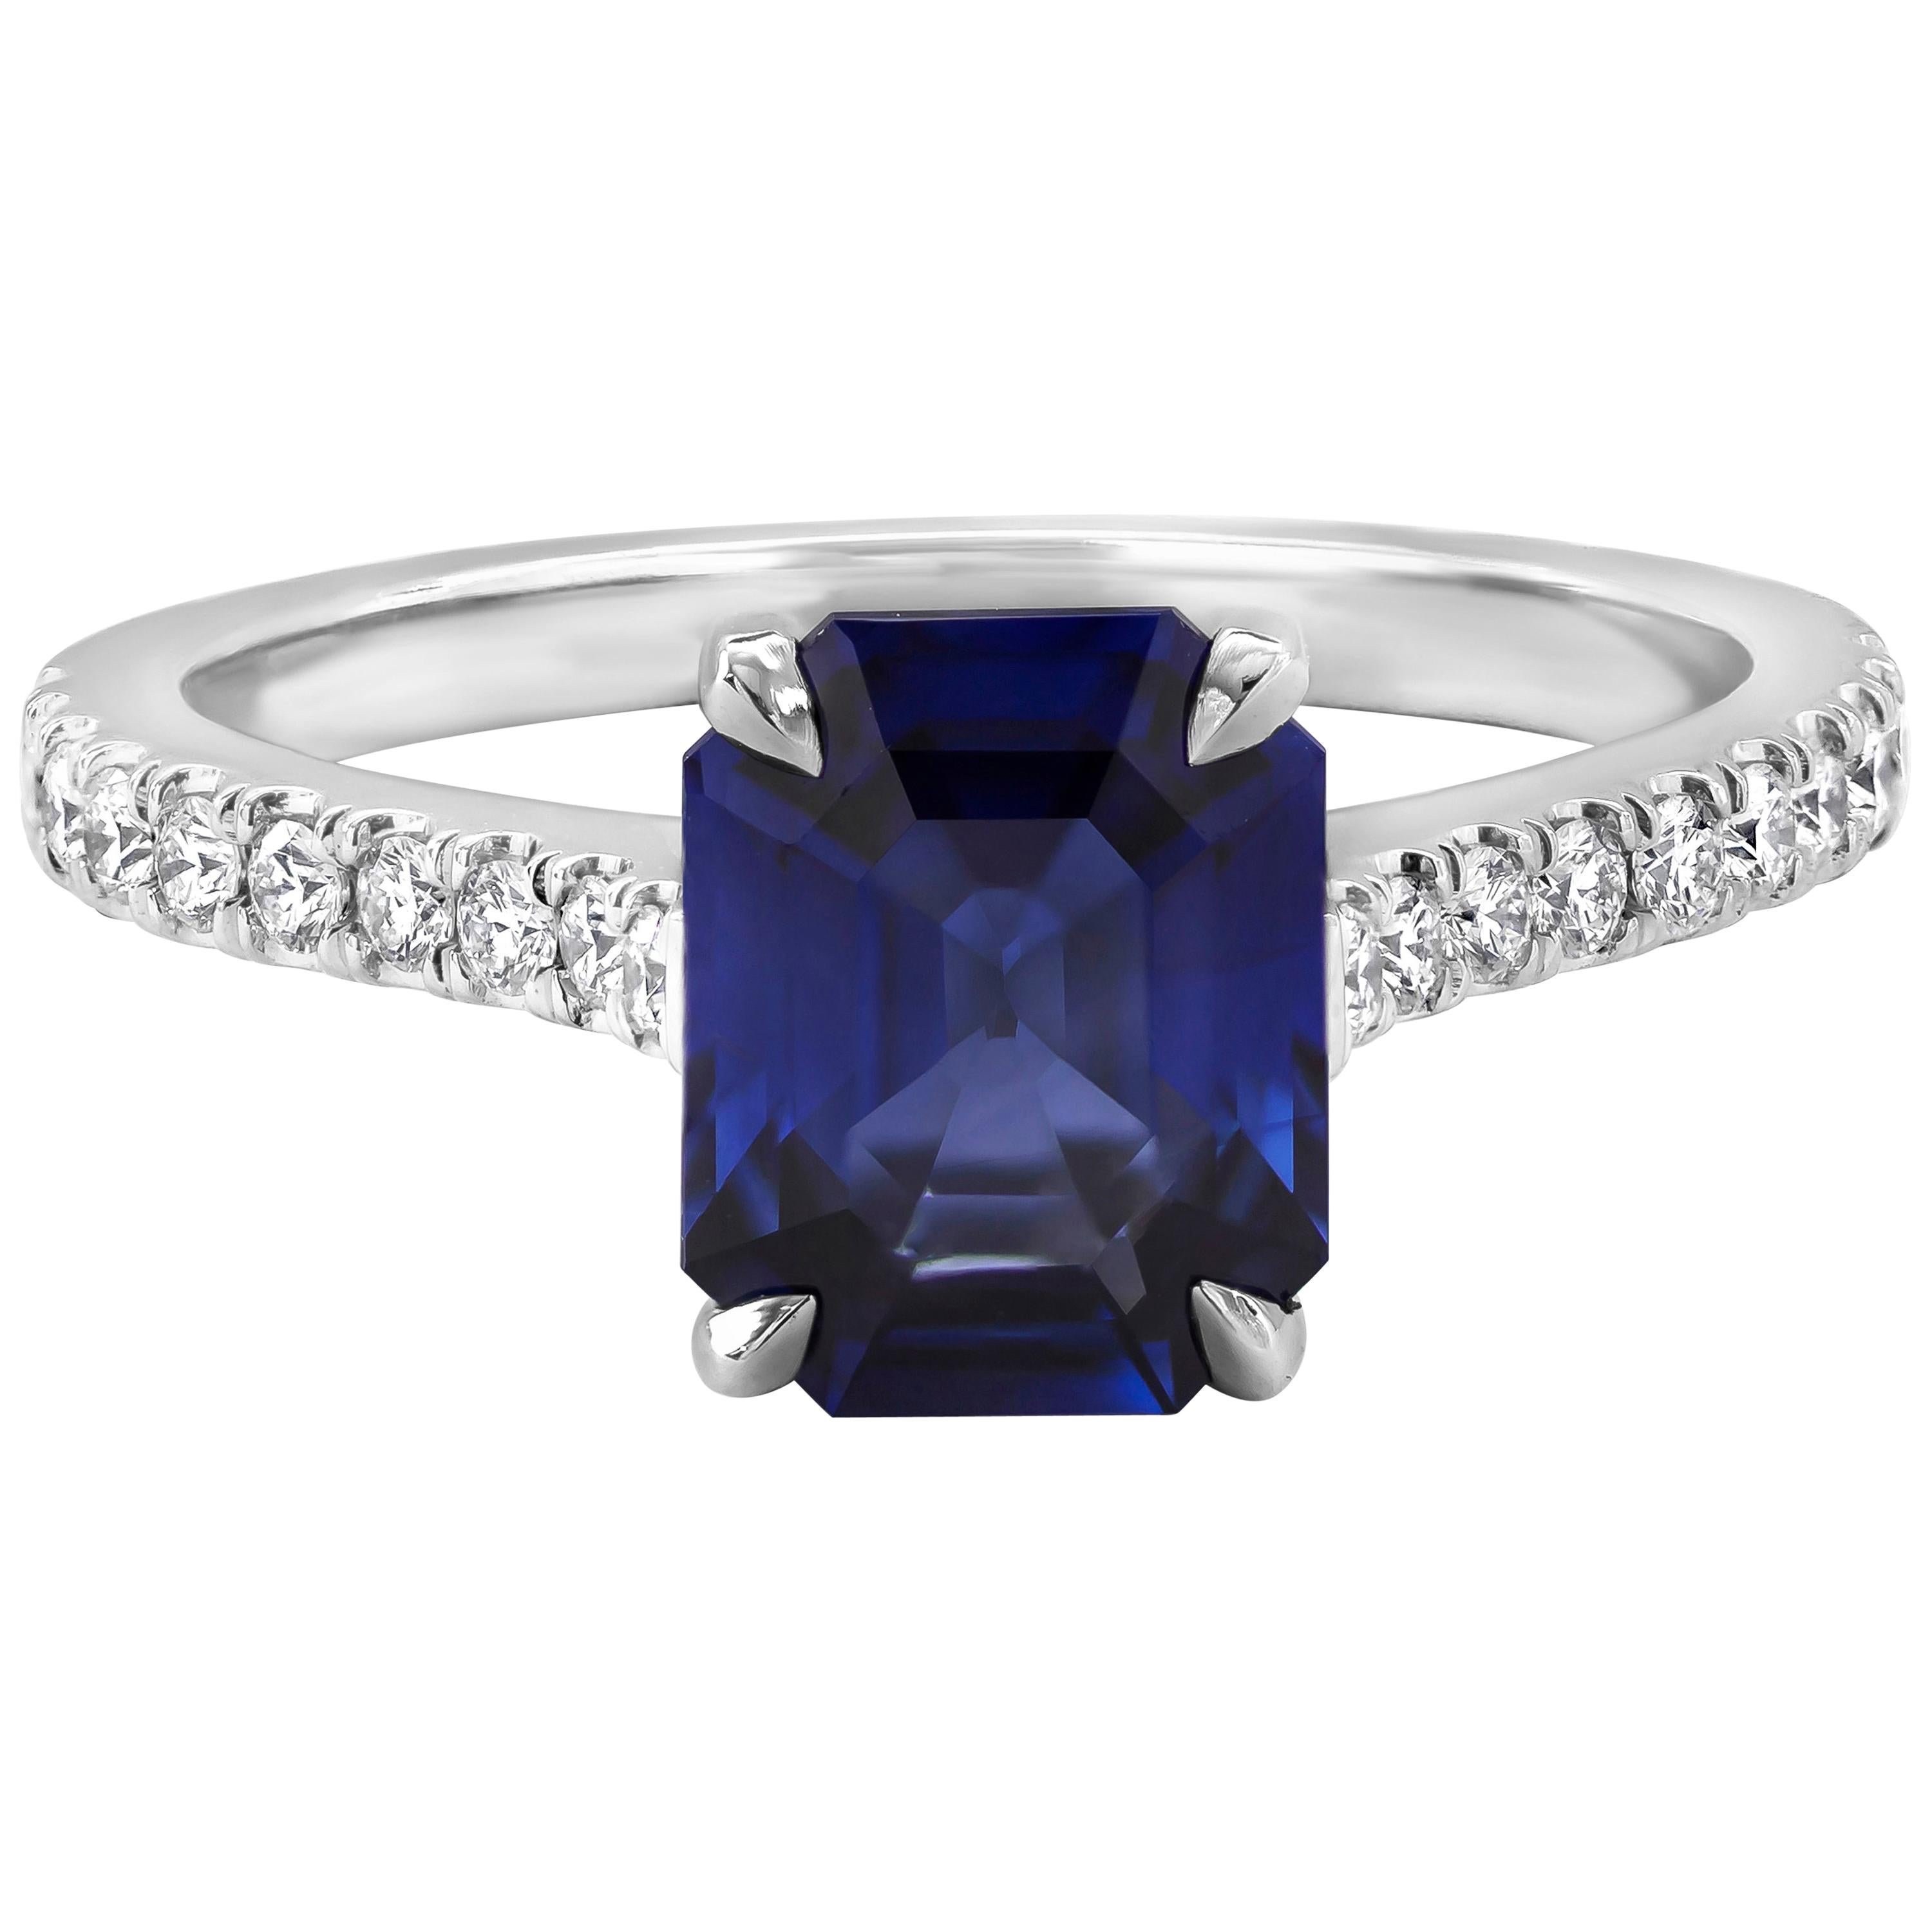 Roman Malakov Bague de fiançailles avec saphir bleu taille émeraude de 2.22 carats et diamants